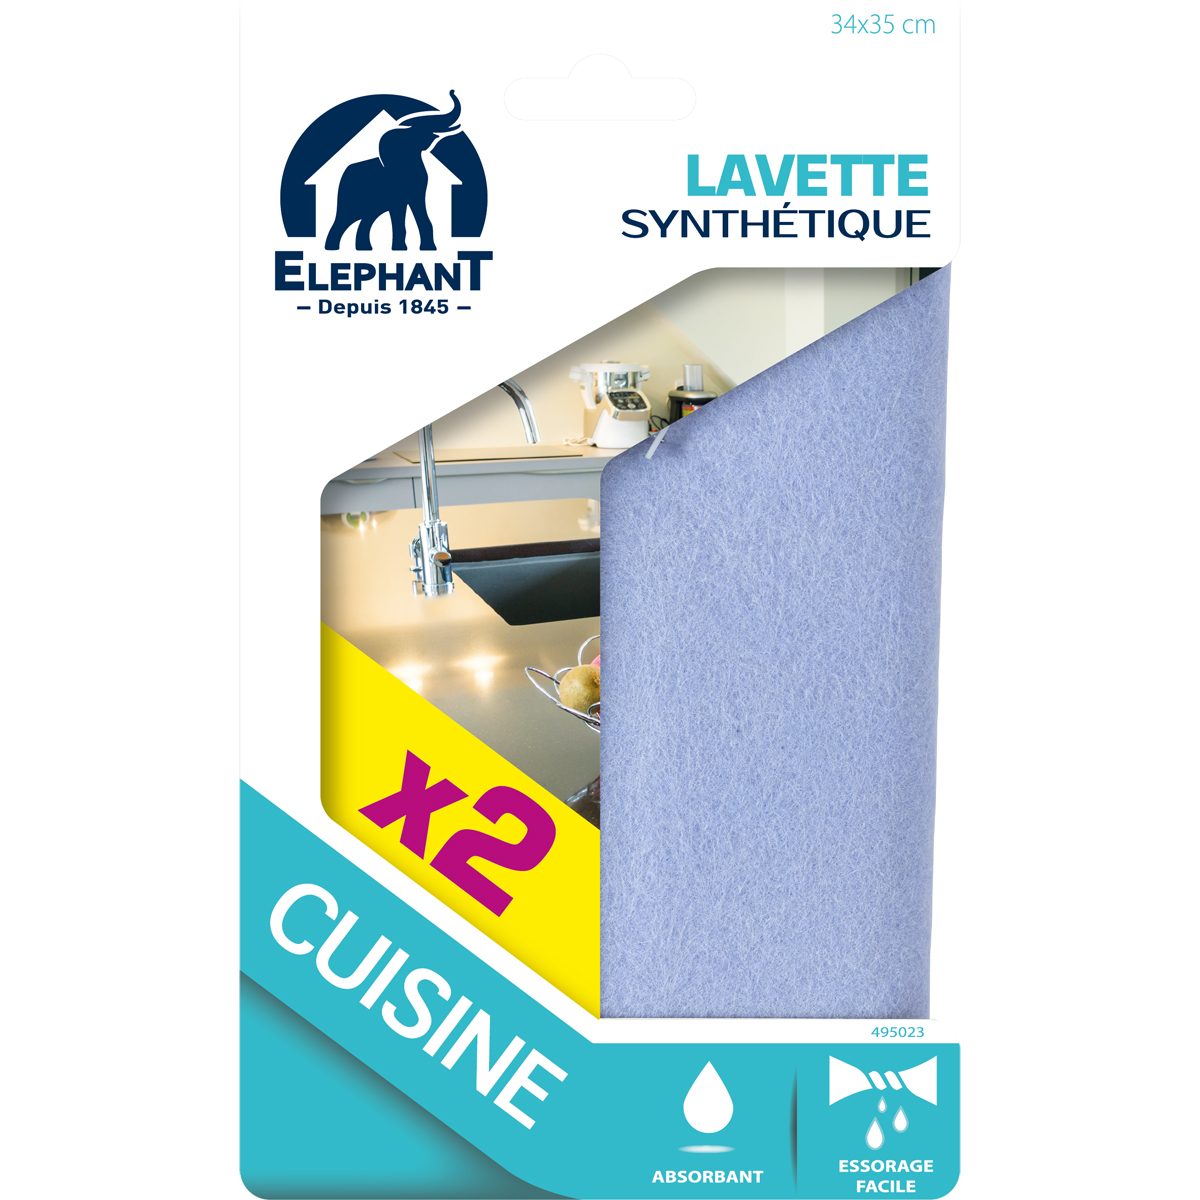 Lavette cuisine / salle de bain - Lavettes synthétiques x2 - Elephant Maison